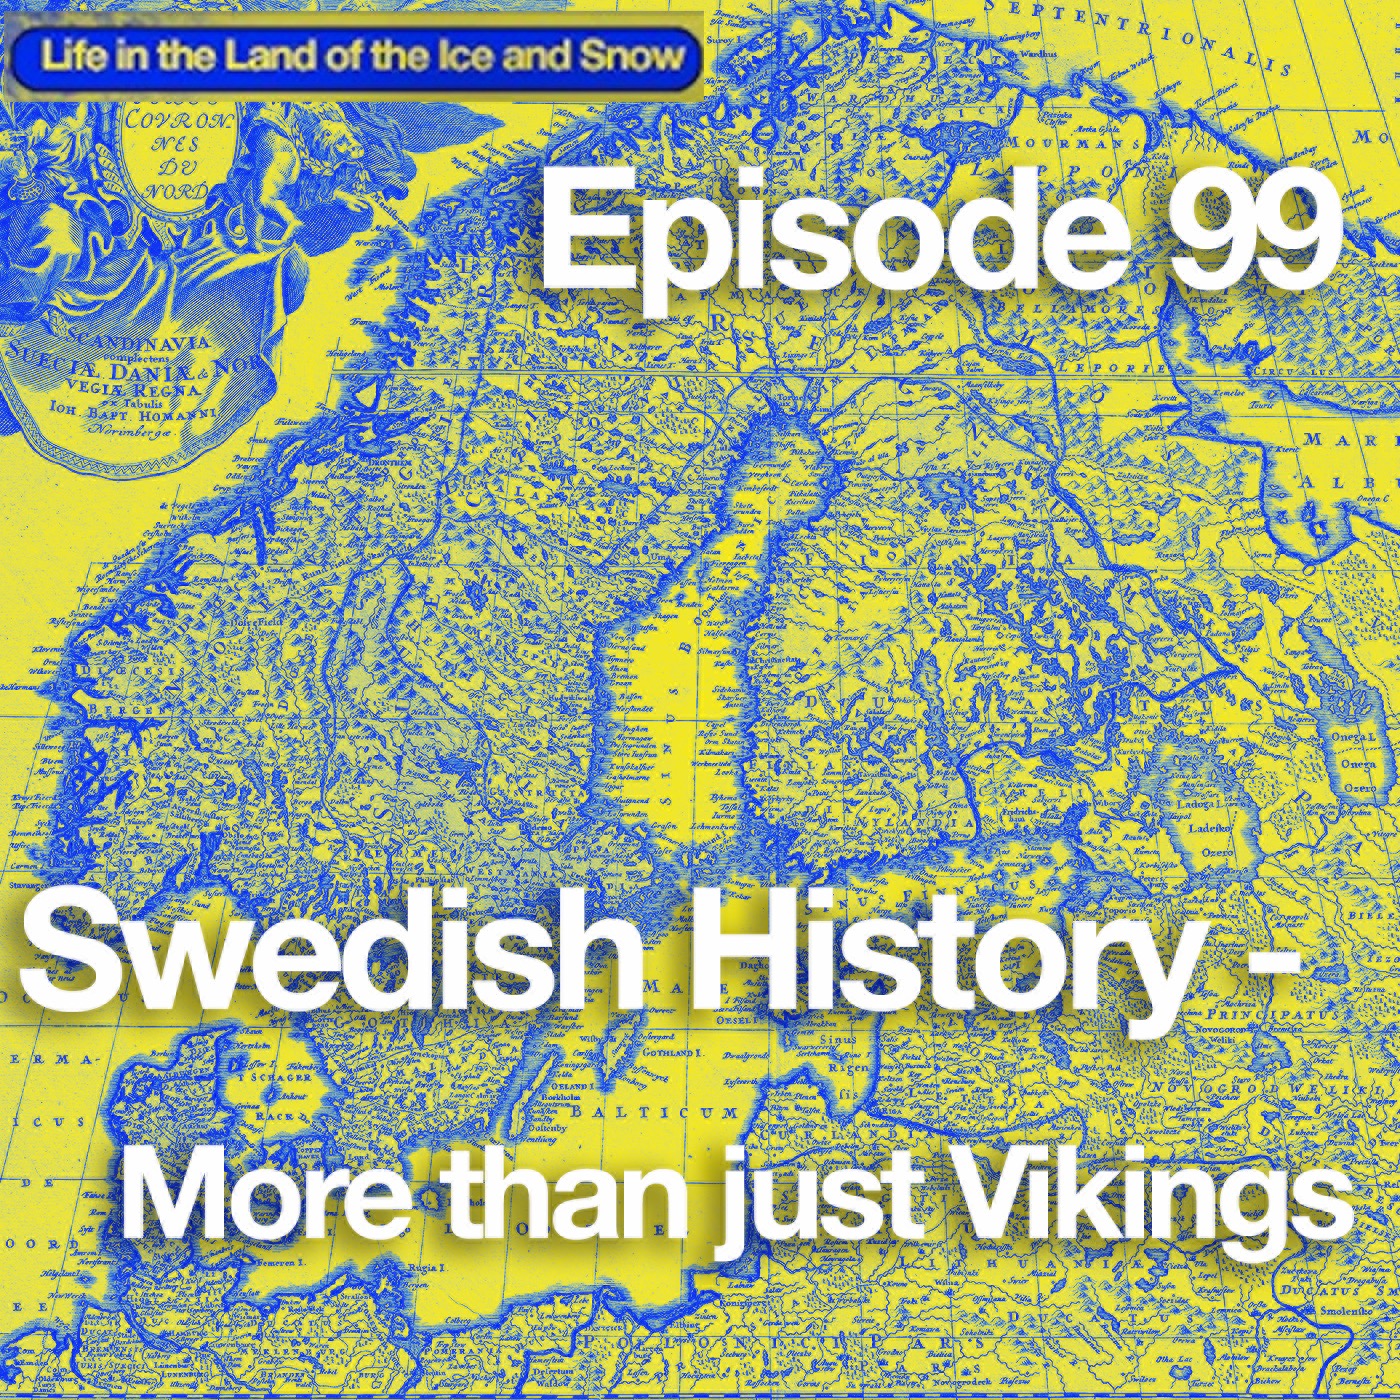 # 99 Swedish History – More than just Vikings